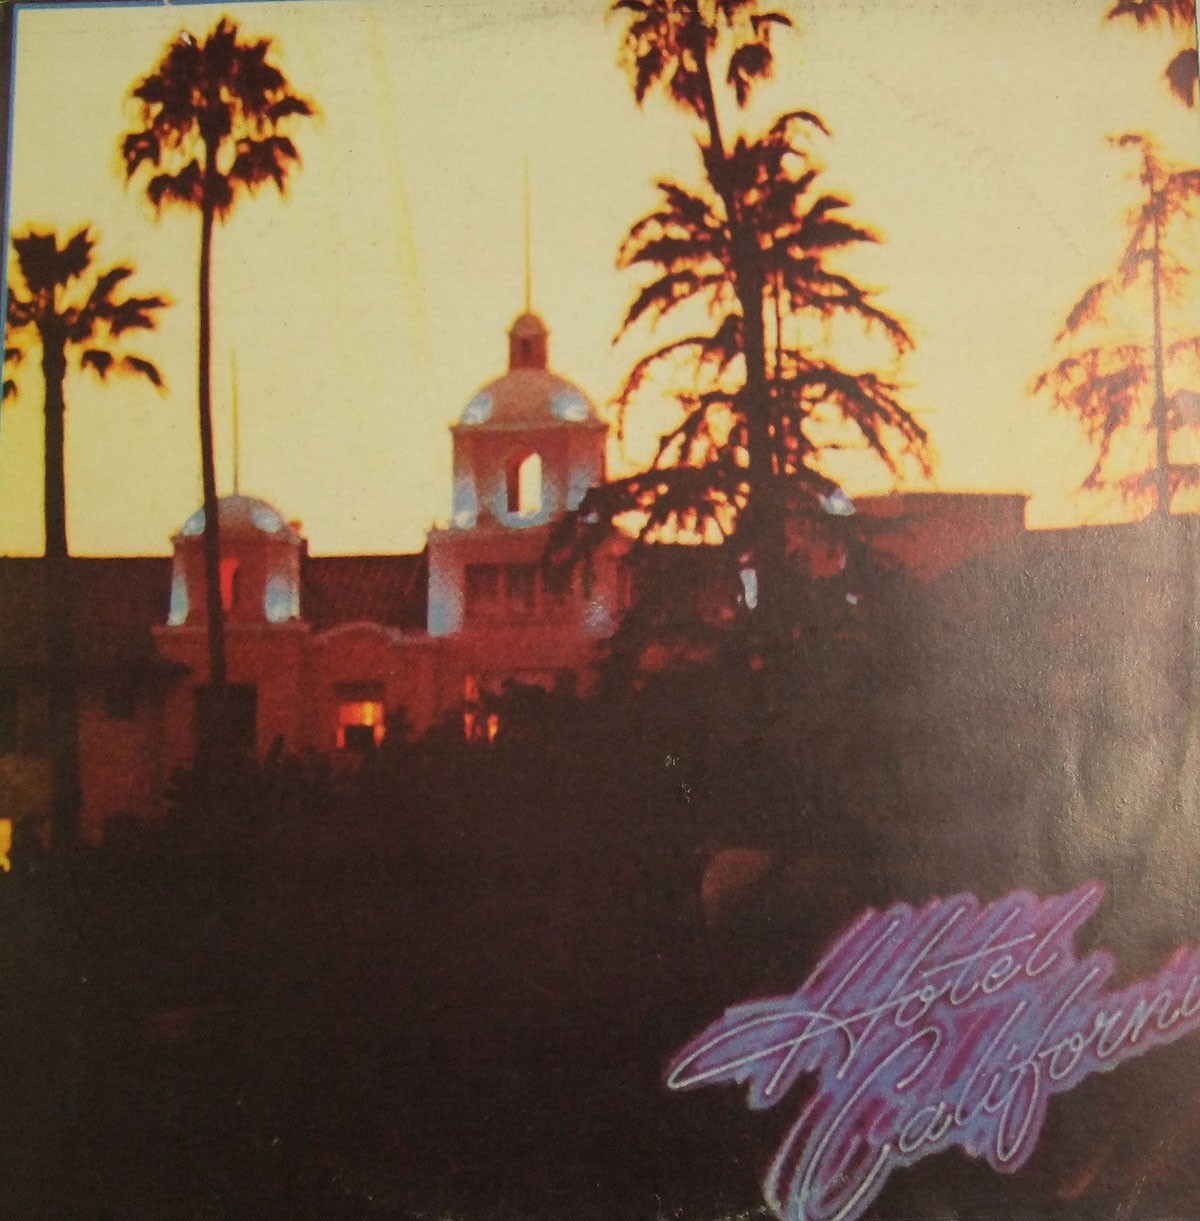 Eagles "Hotel California" Album Cover